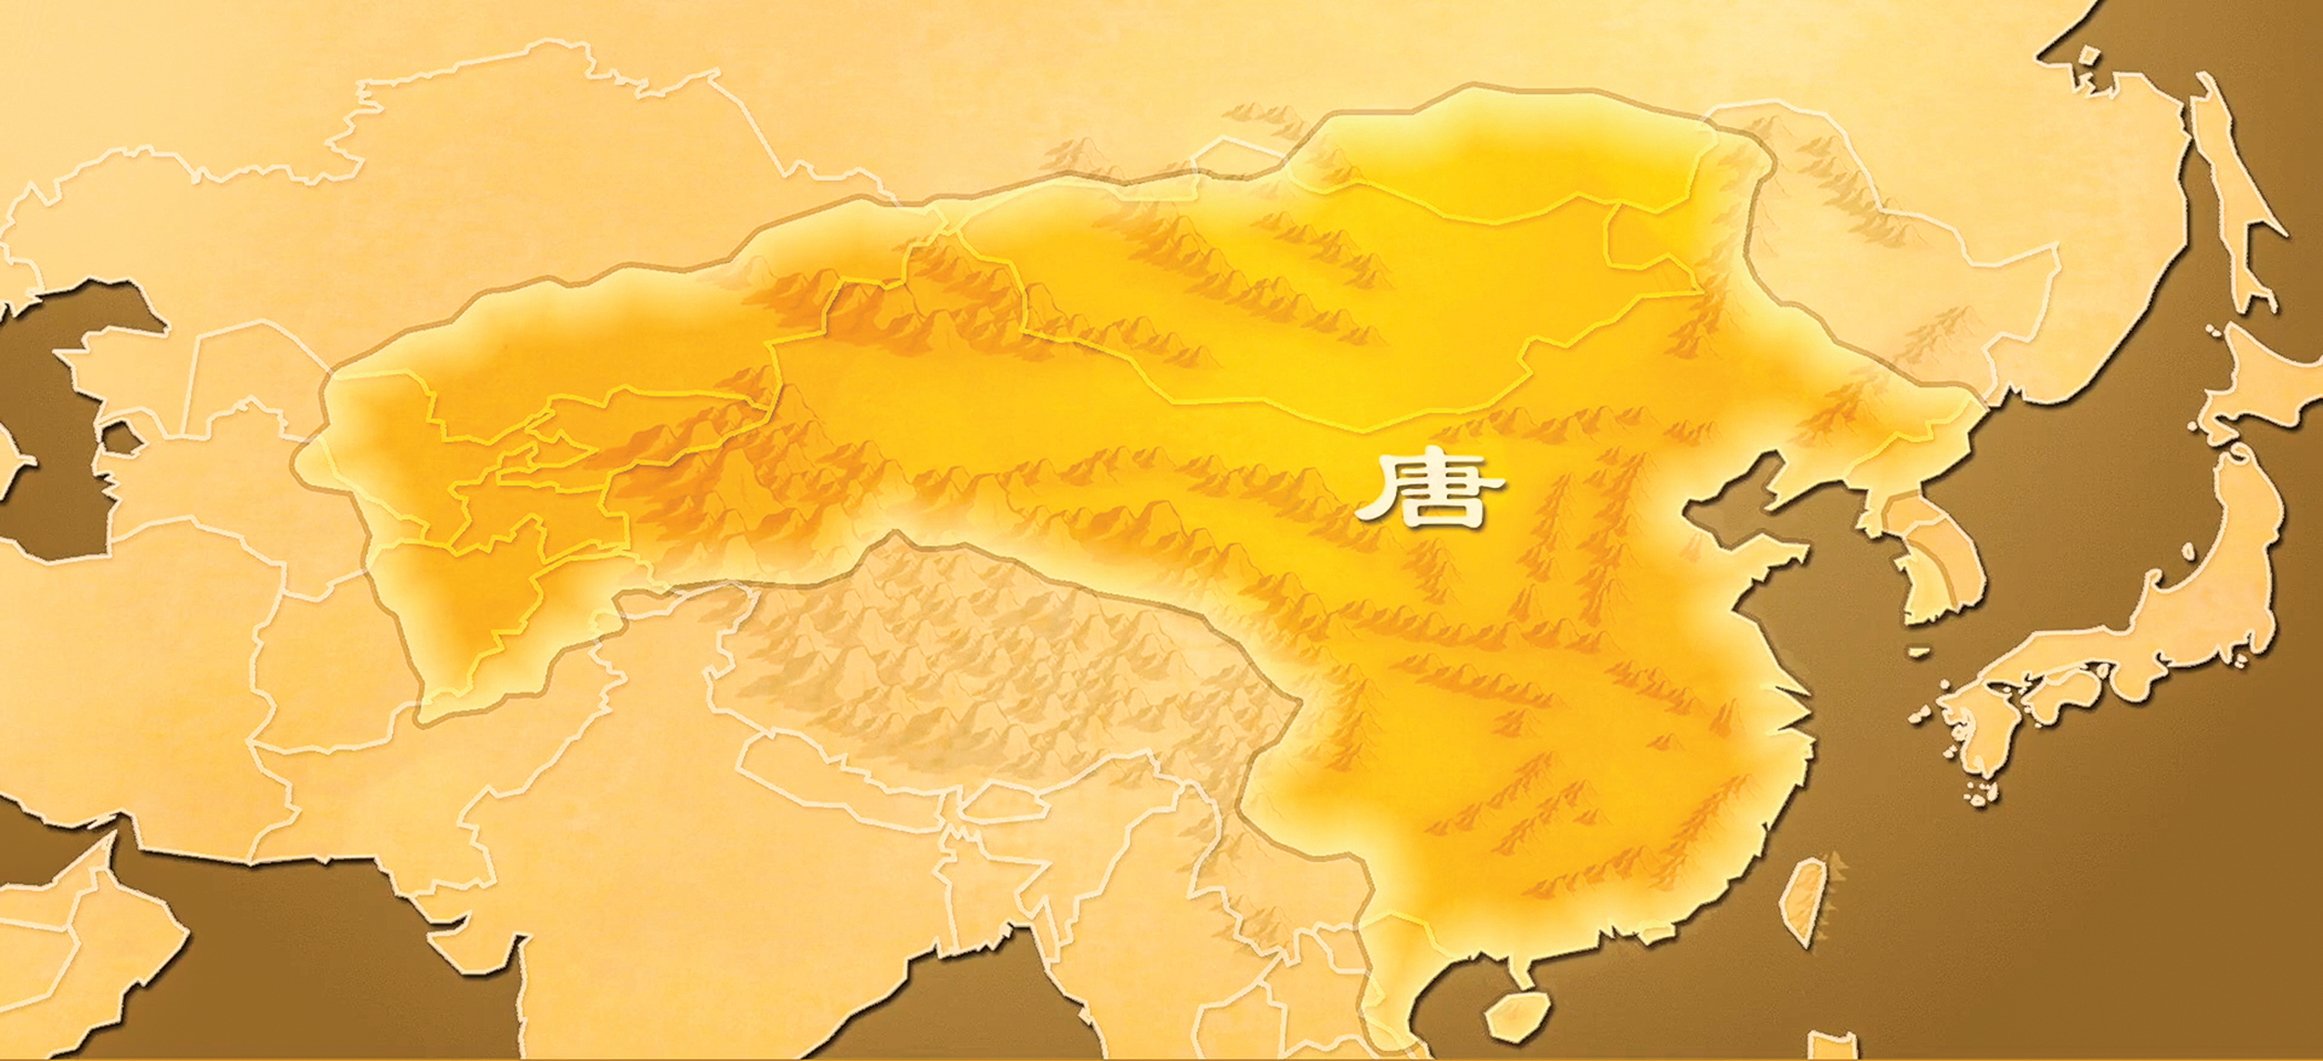 大唐兼收並蓄，海納百川。圖為唐朝的版圖。